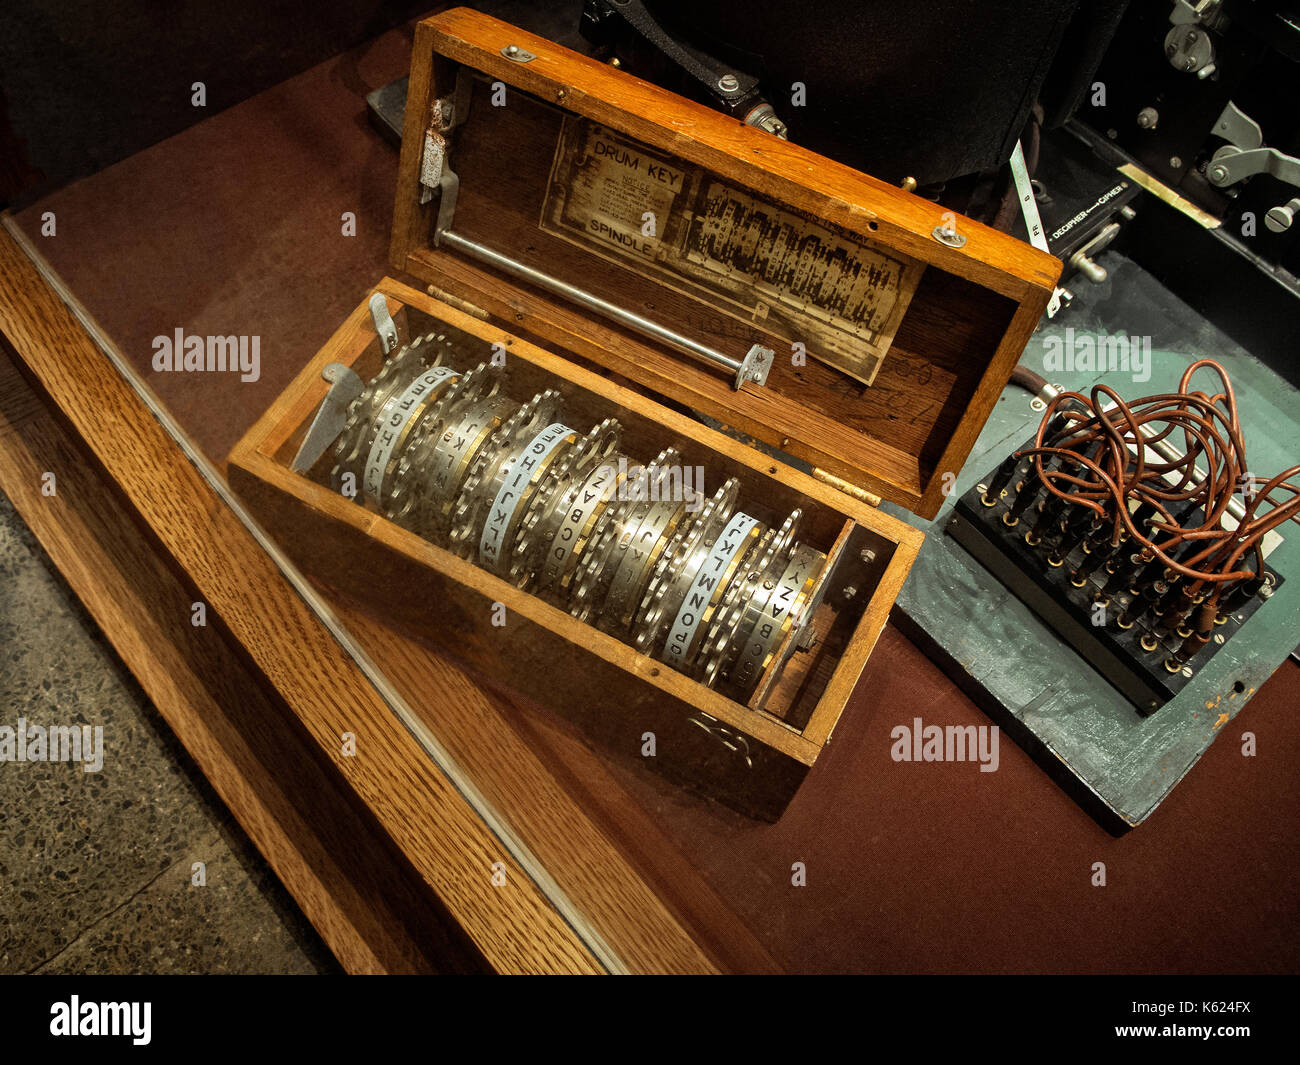 Chiavi a tamburo per la seconda guerra mondiale enigma macchina di decodifica. Foto Stock